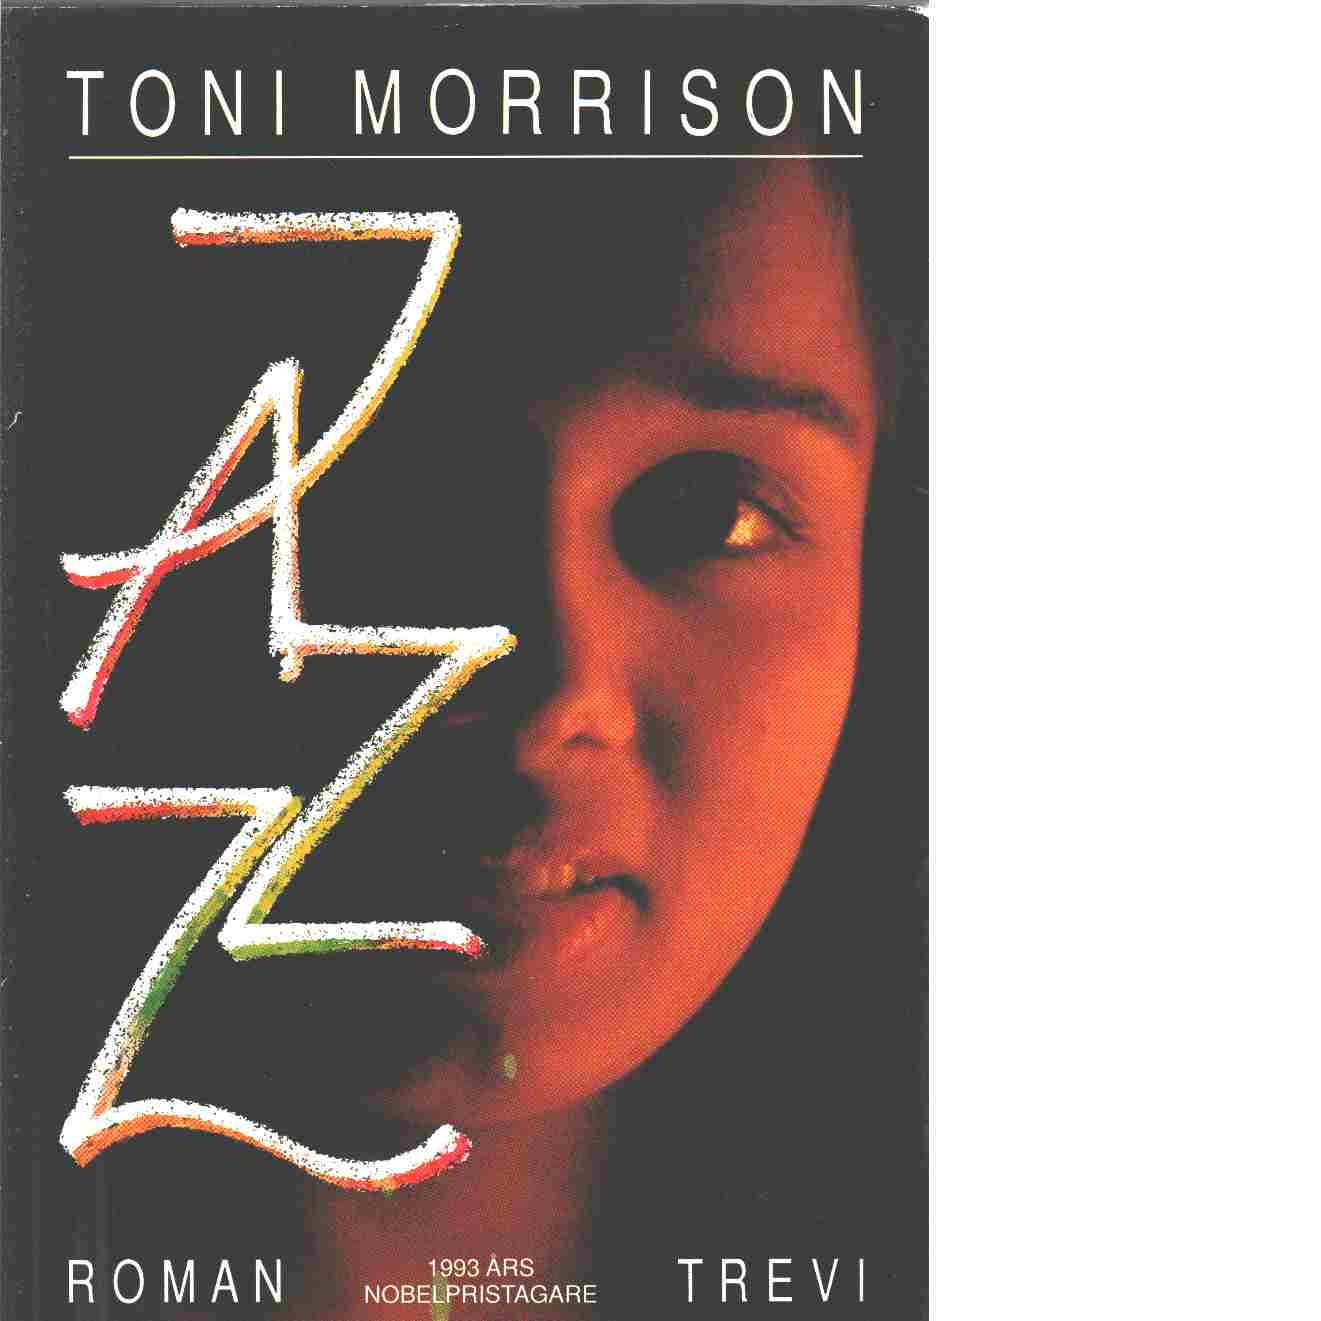 Jazz - Morrison, Toni